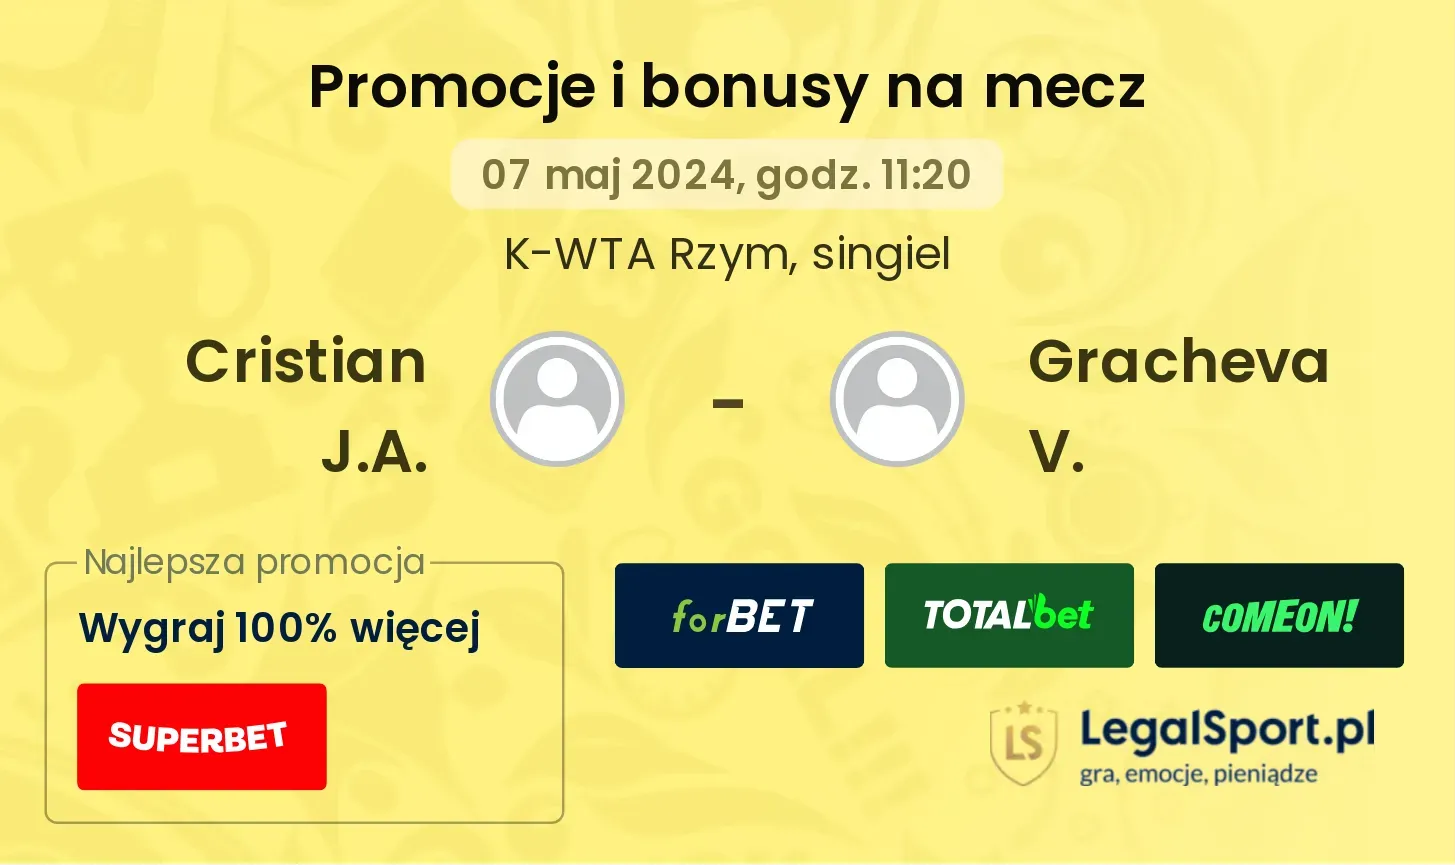 Cristian J.A. - Gracheva V. promocje bonusy na mecz